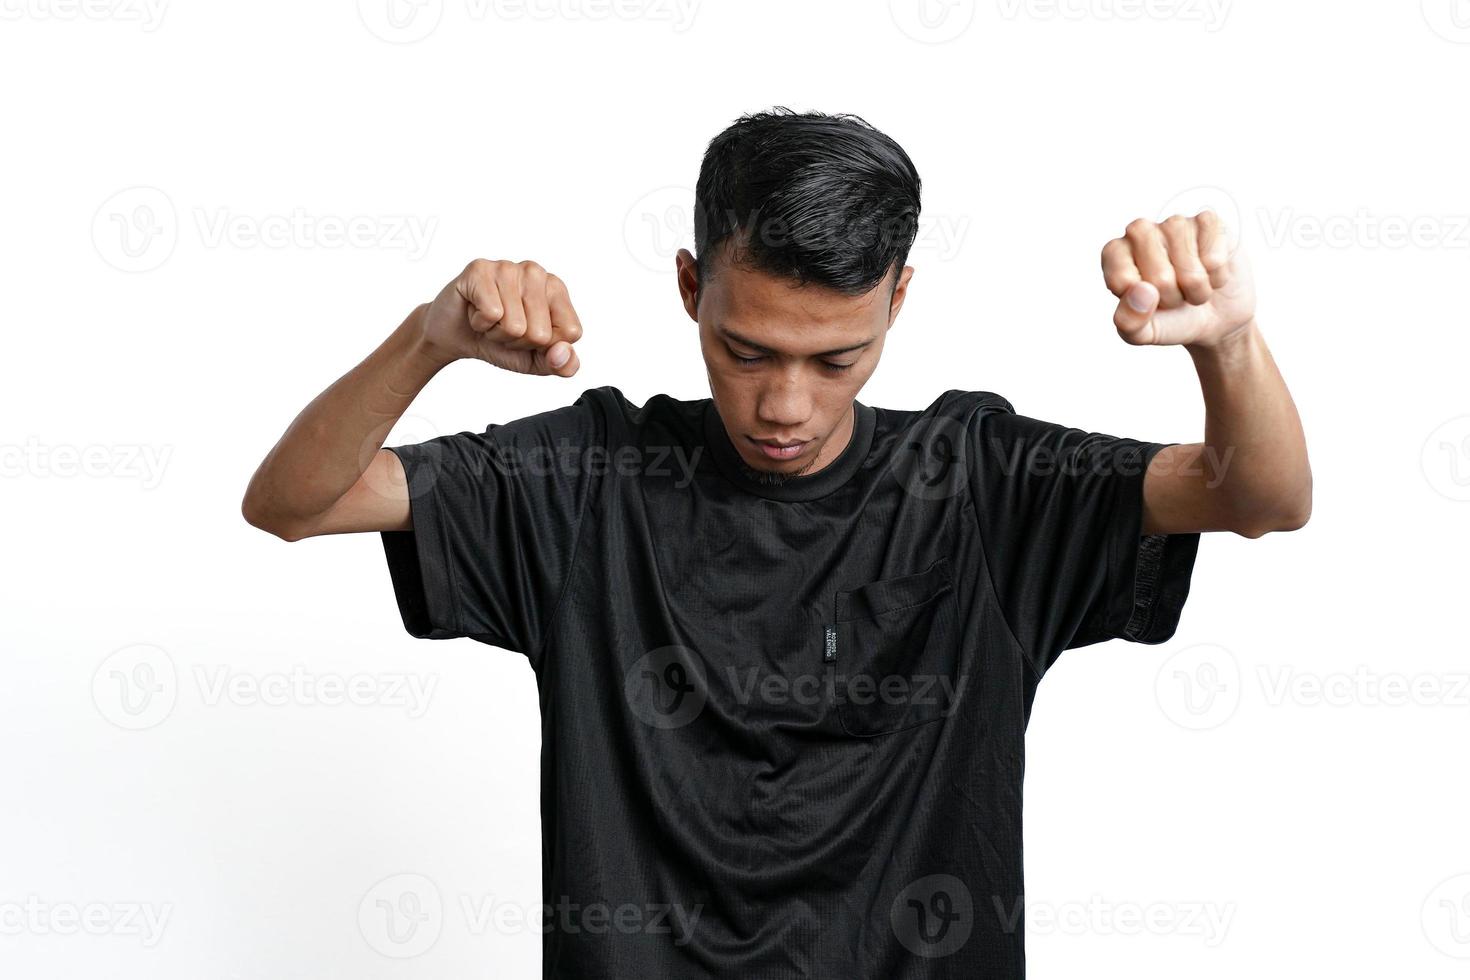 asiatischer Mann mit schwarzem Trainings-T-Shirt, der eine starke Haltung mit erhobenen Armen und Muskeln zeigt. durch weißen Hintergrund isoliert foto